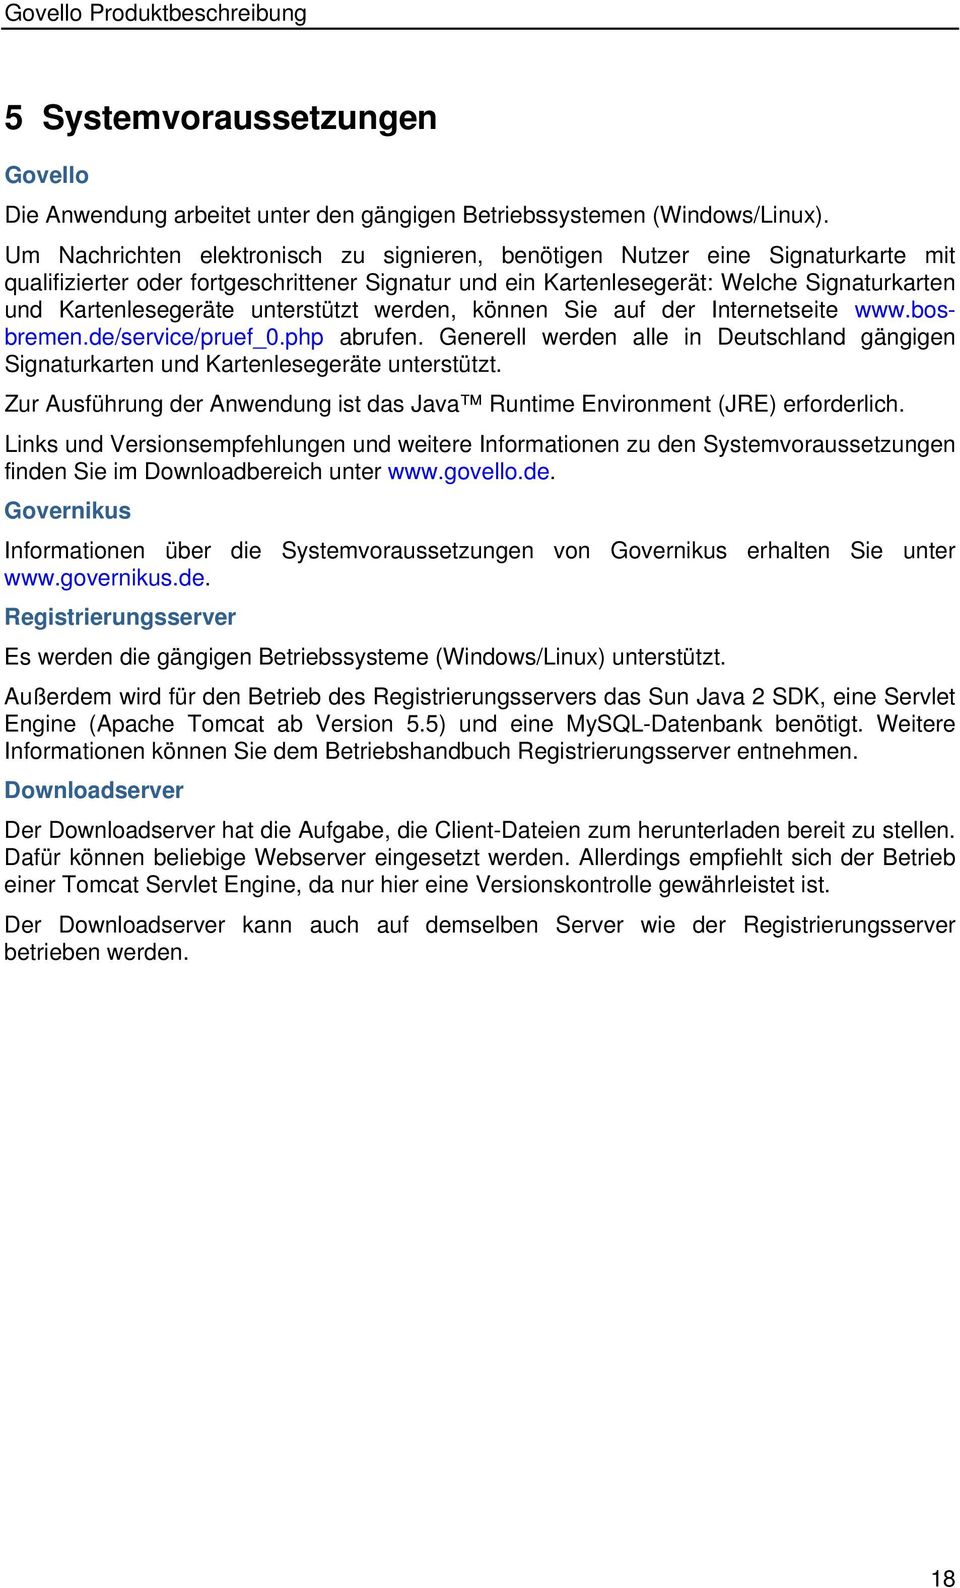 unterstützt werden, können Sie auf der Internetseite www.bosbremen.de/service/pruef_0.php abrufen. Generell werden alle in Deutschland gängigen Signaturkarten und Kartenlesegeräte unterstützt.